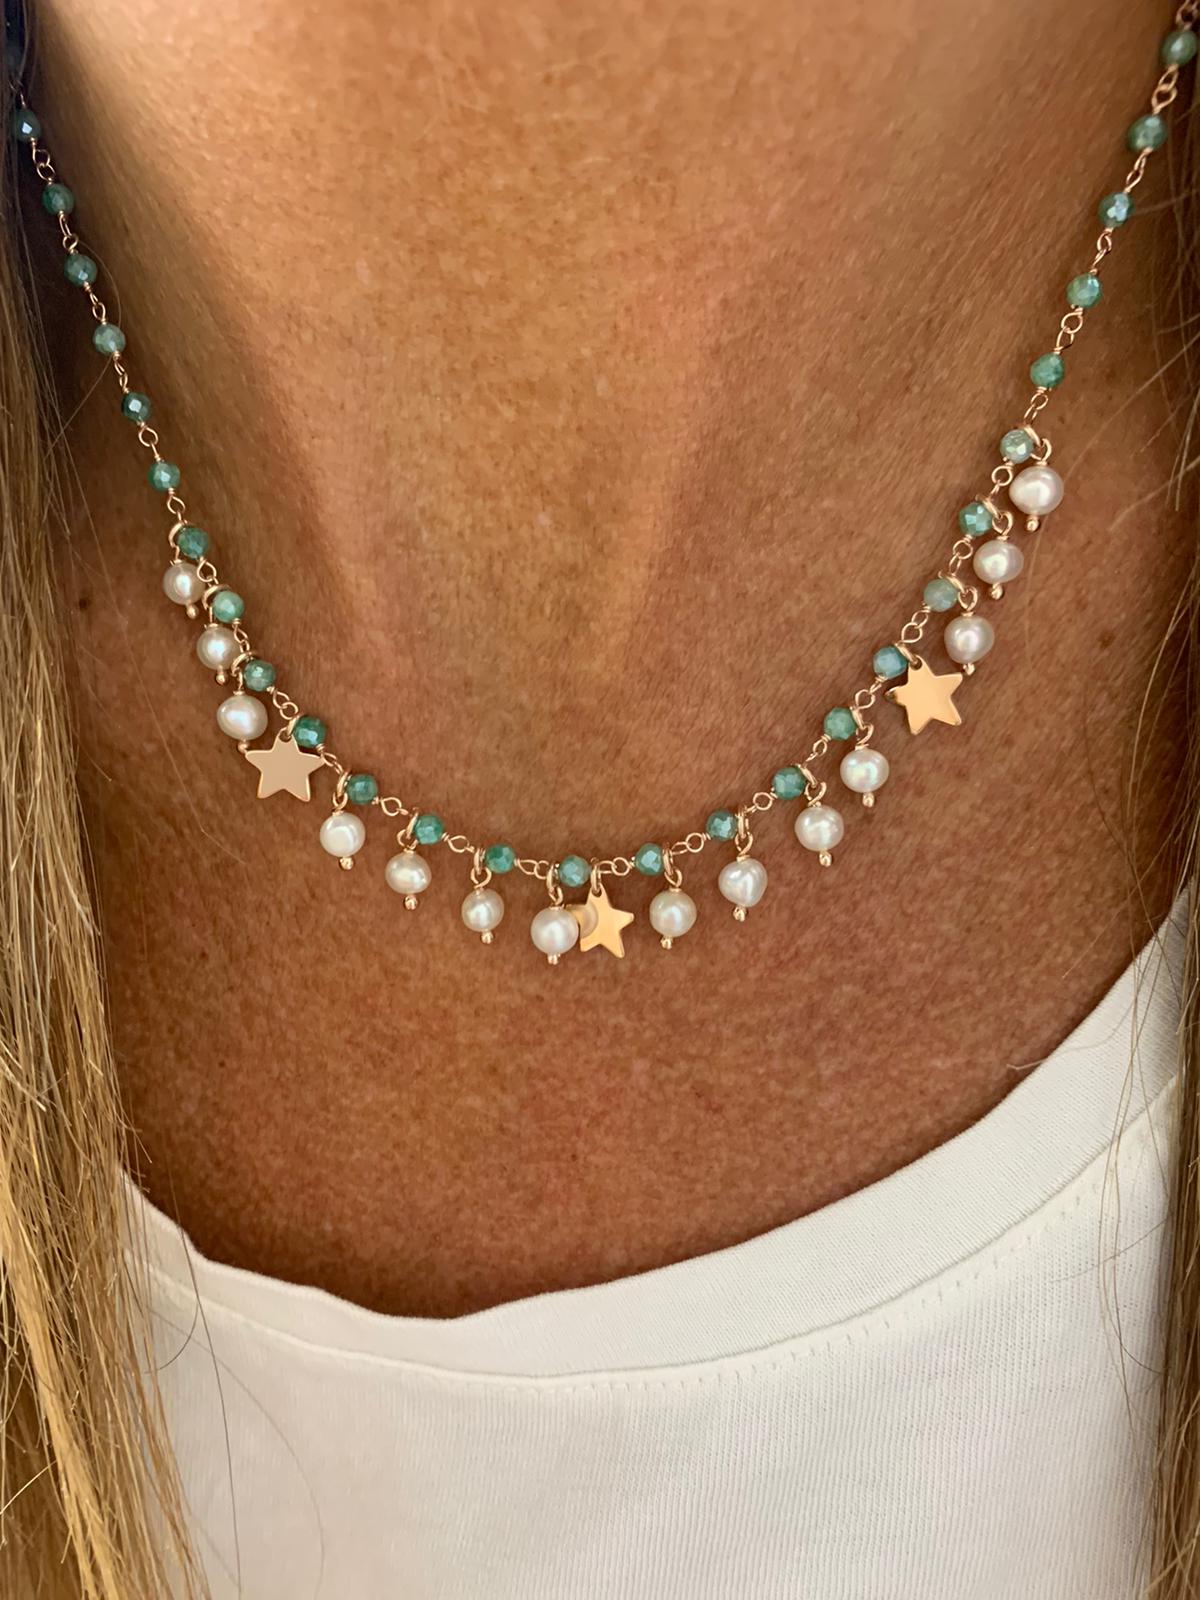 Collana catena cristalli Verde salvia con perle pendenti da 0,4 mm e 3 stelle da 0,8 mm pendenti bagnata in oro rosé - cm 40